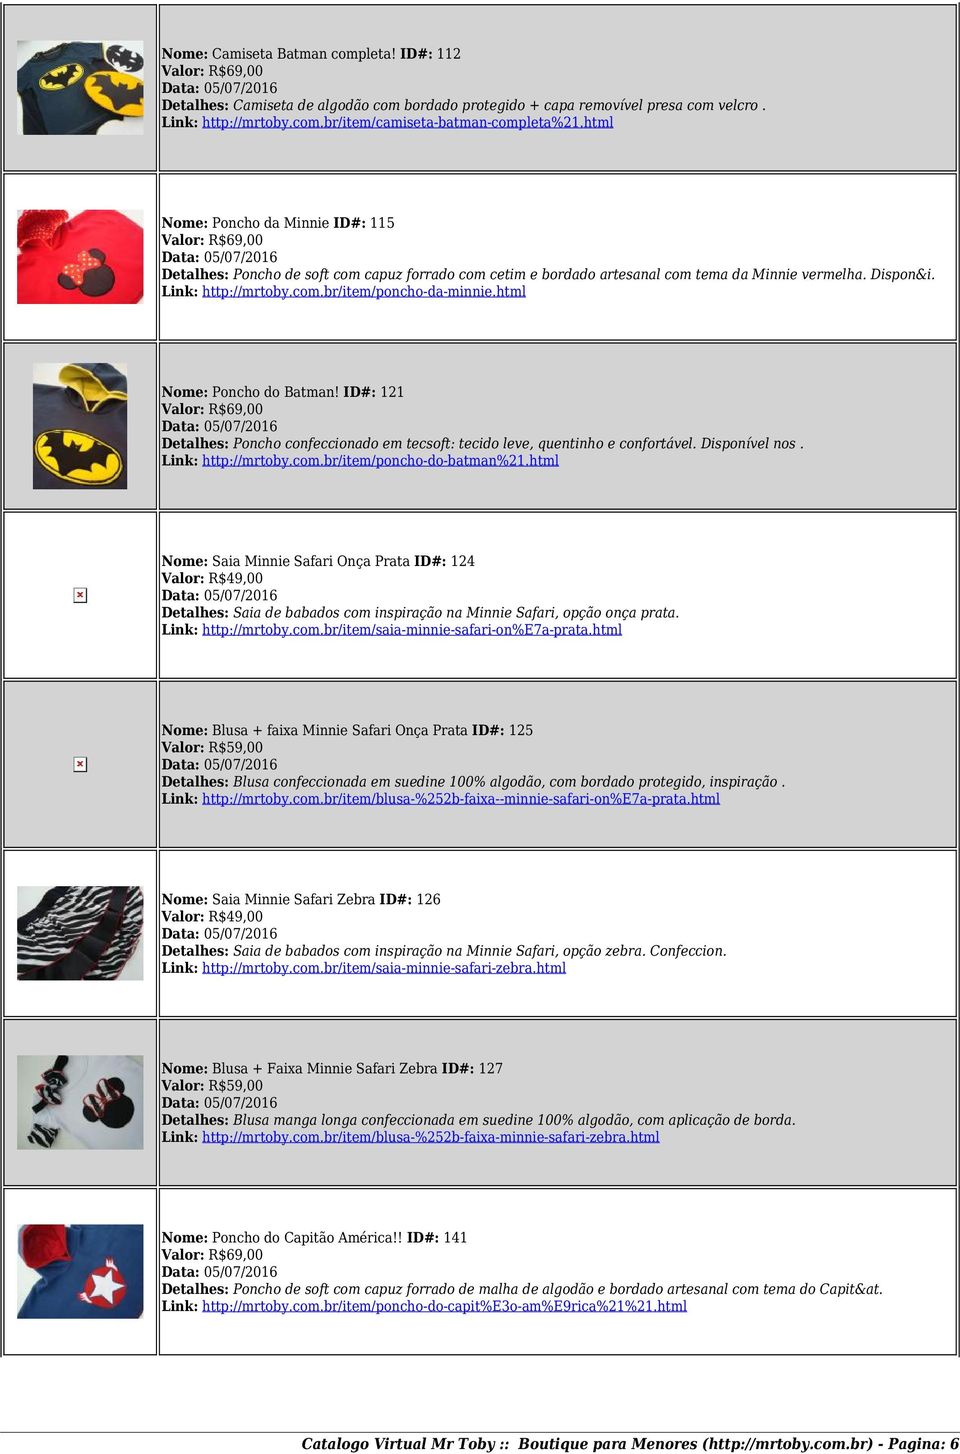 html Nome: Poncho do Batman! ID#: 121 Detalhes: Poncho confeccionado em tecsoft: tecido leve, quentinho e confortável. Disponível nos. Link: http://mrtoby.com.br/item/poncho-do-batman%21.